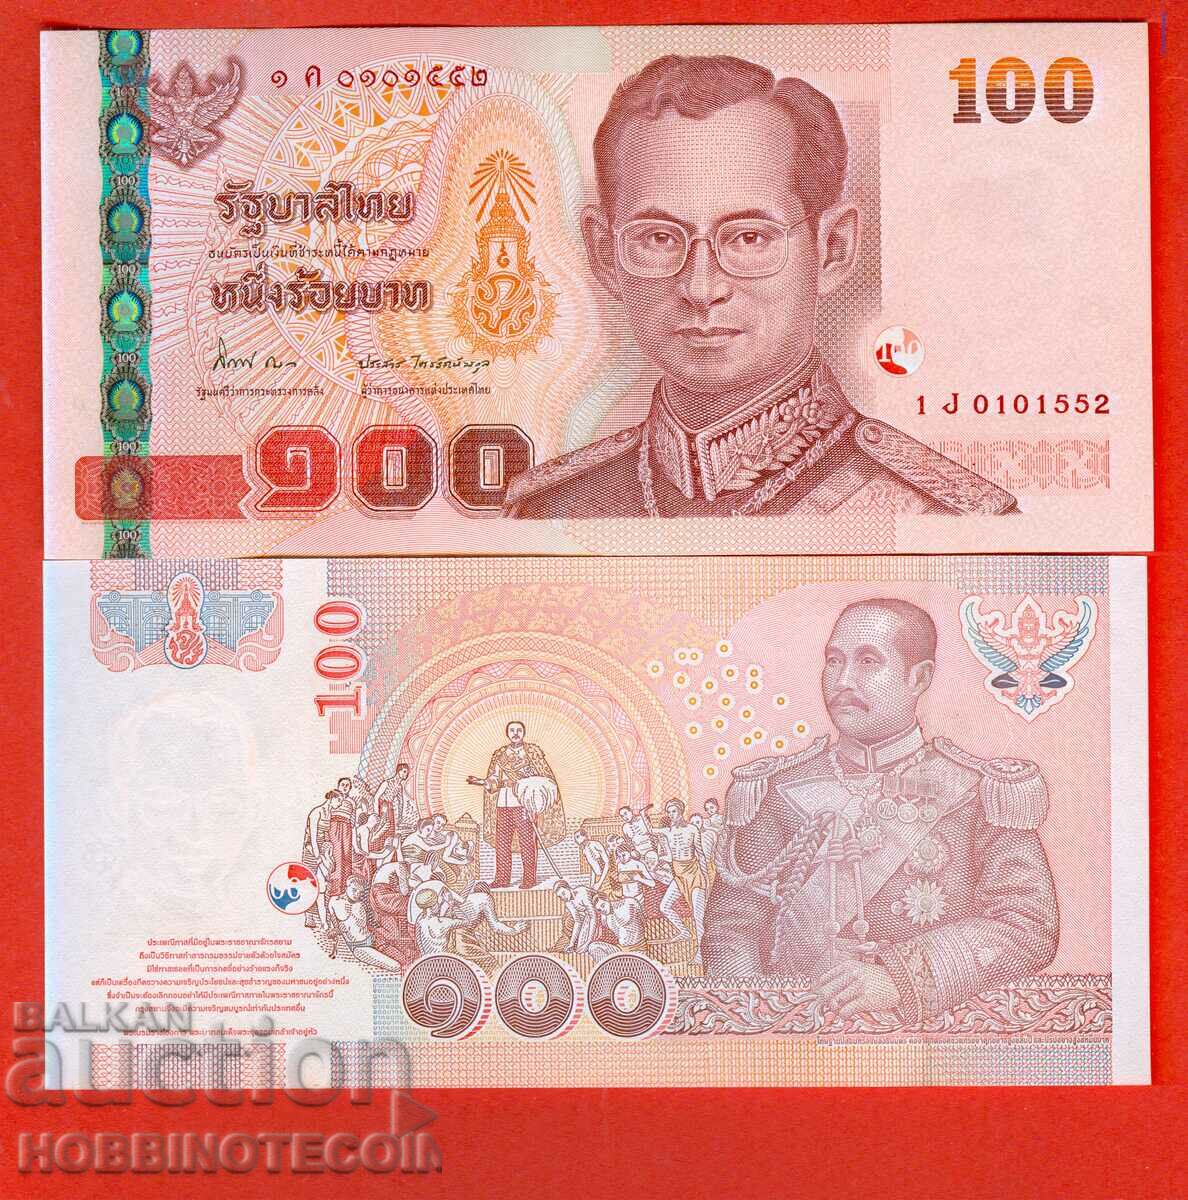 THAILAND 100 BATA NEW issue 2005 - under 84 NEW UNC